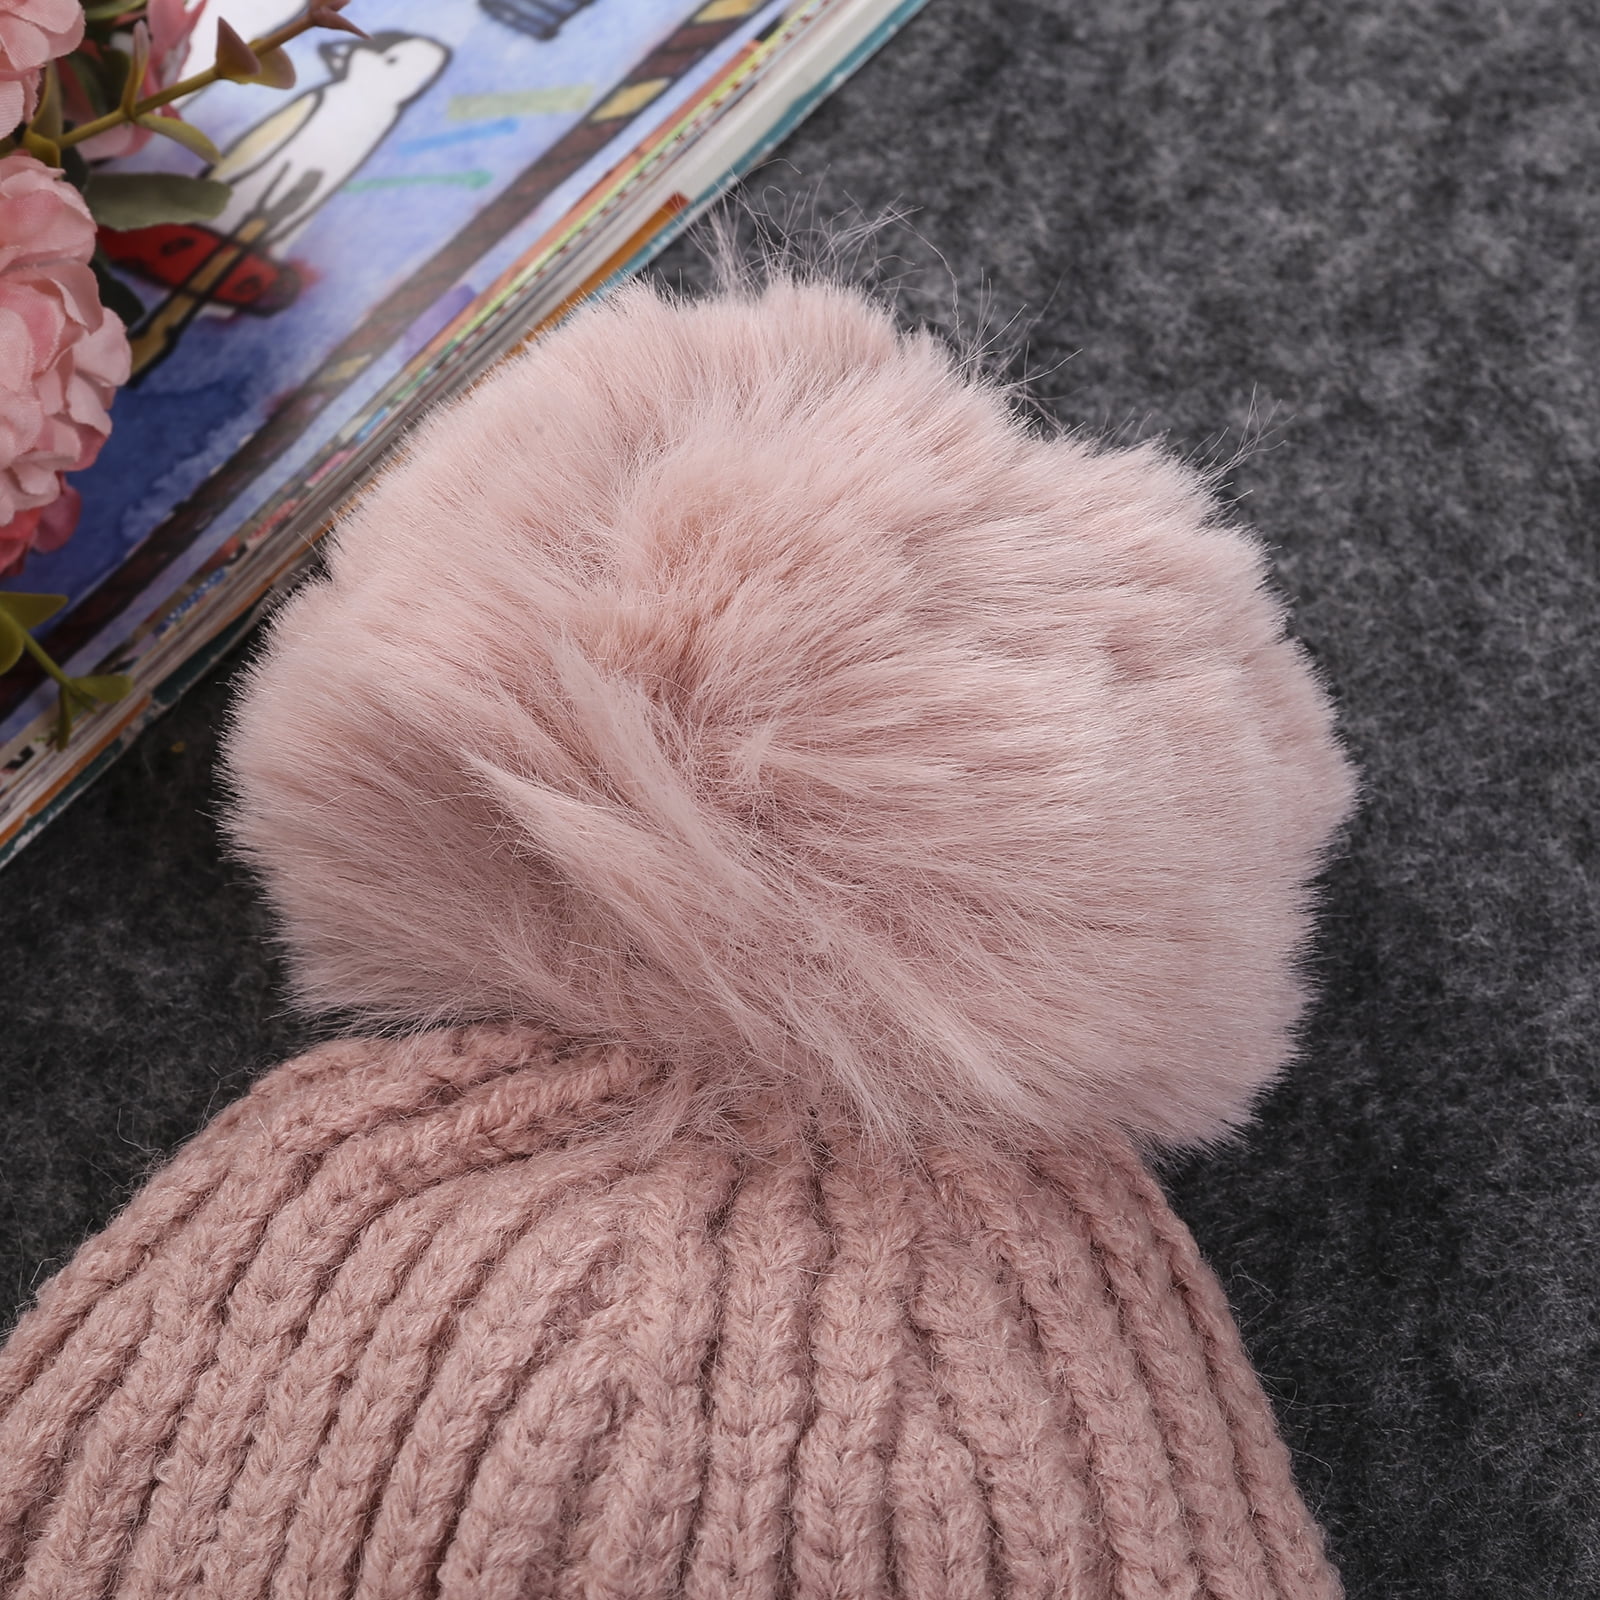 *SALE* Gorgeous Kinder Baby Girl Pink Flower Big Pompom Hat Cotton Lining